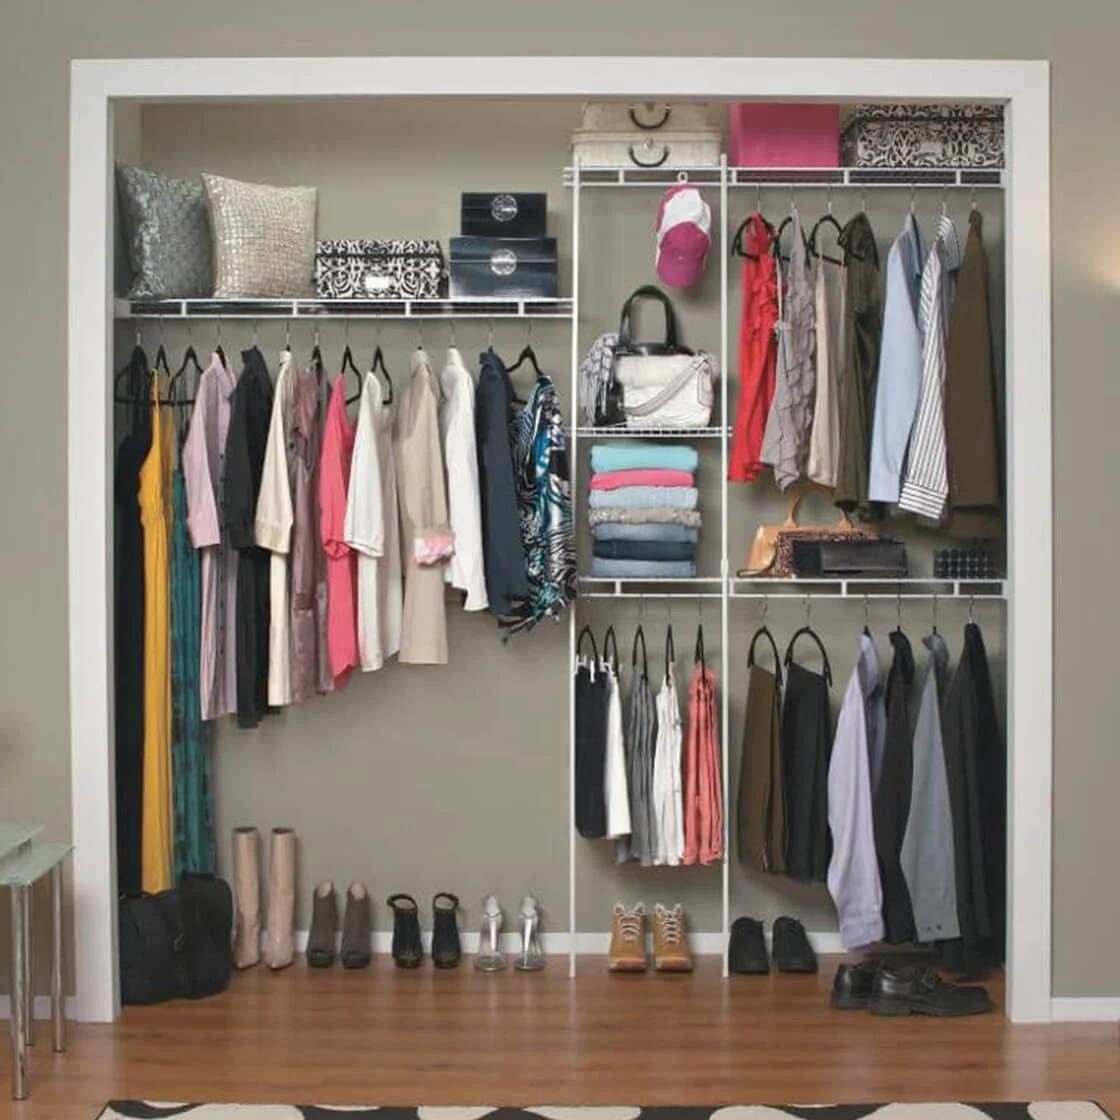 Organized closet